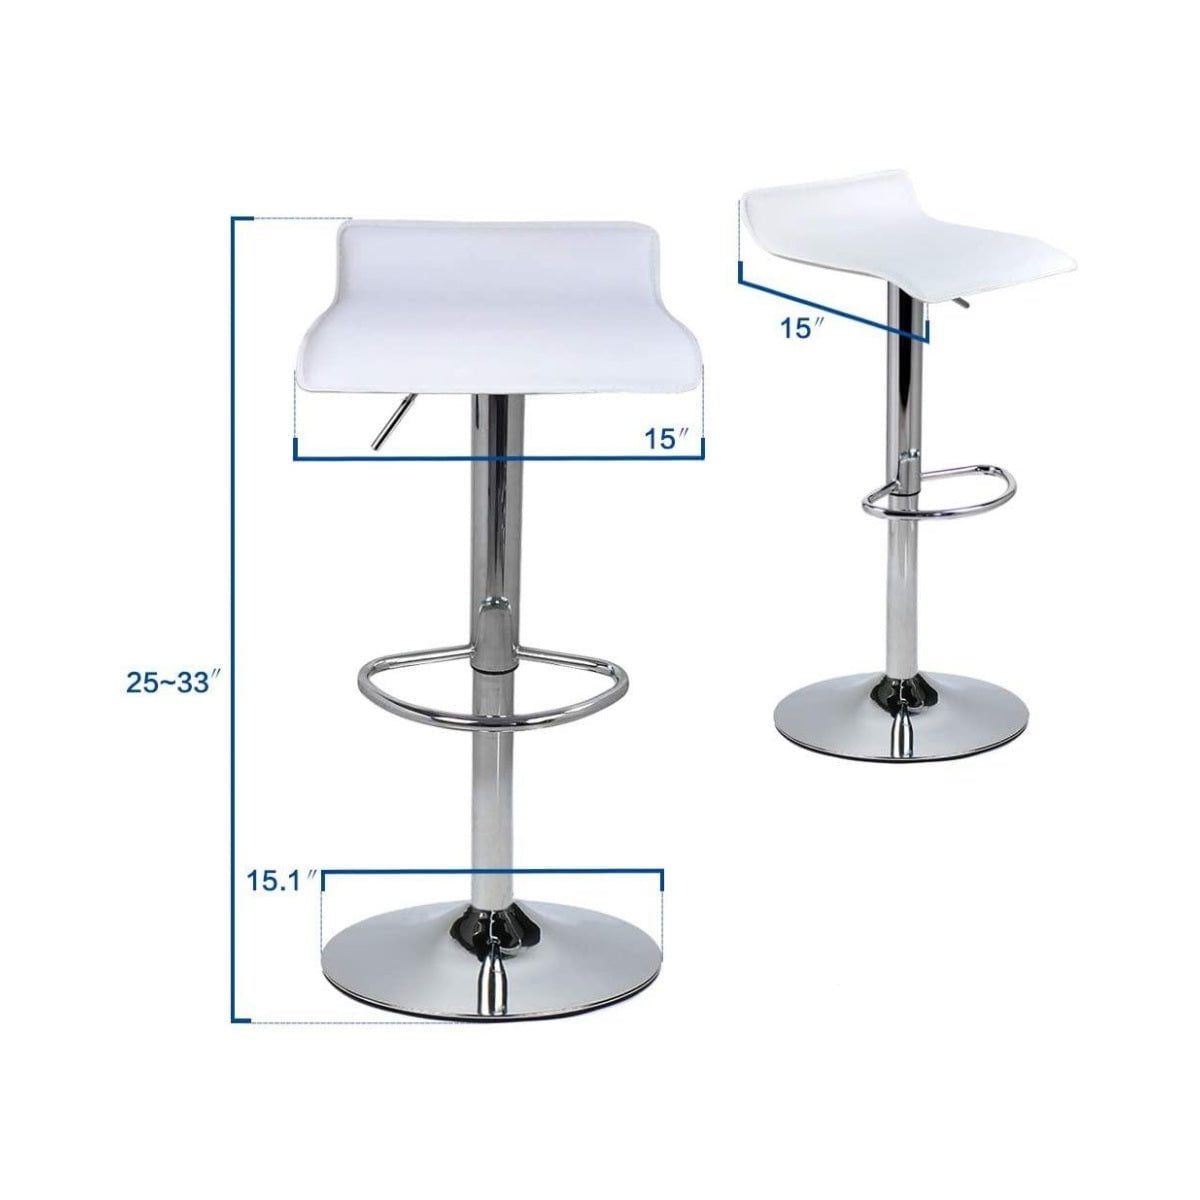 Elecwish white bar stool OW002 size